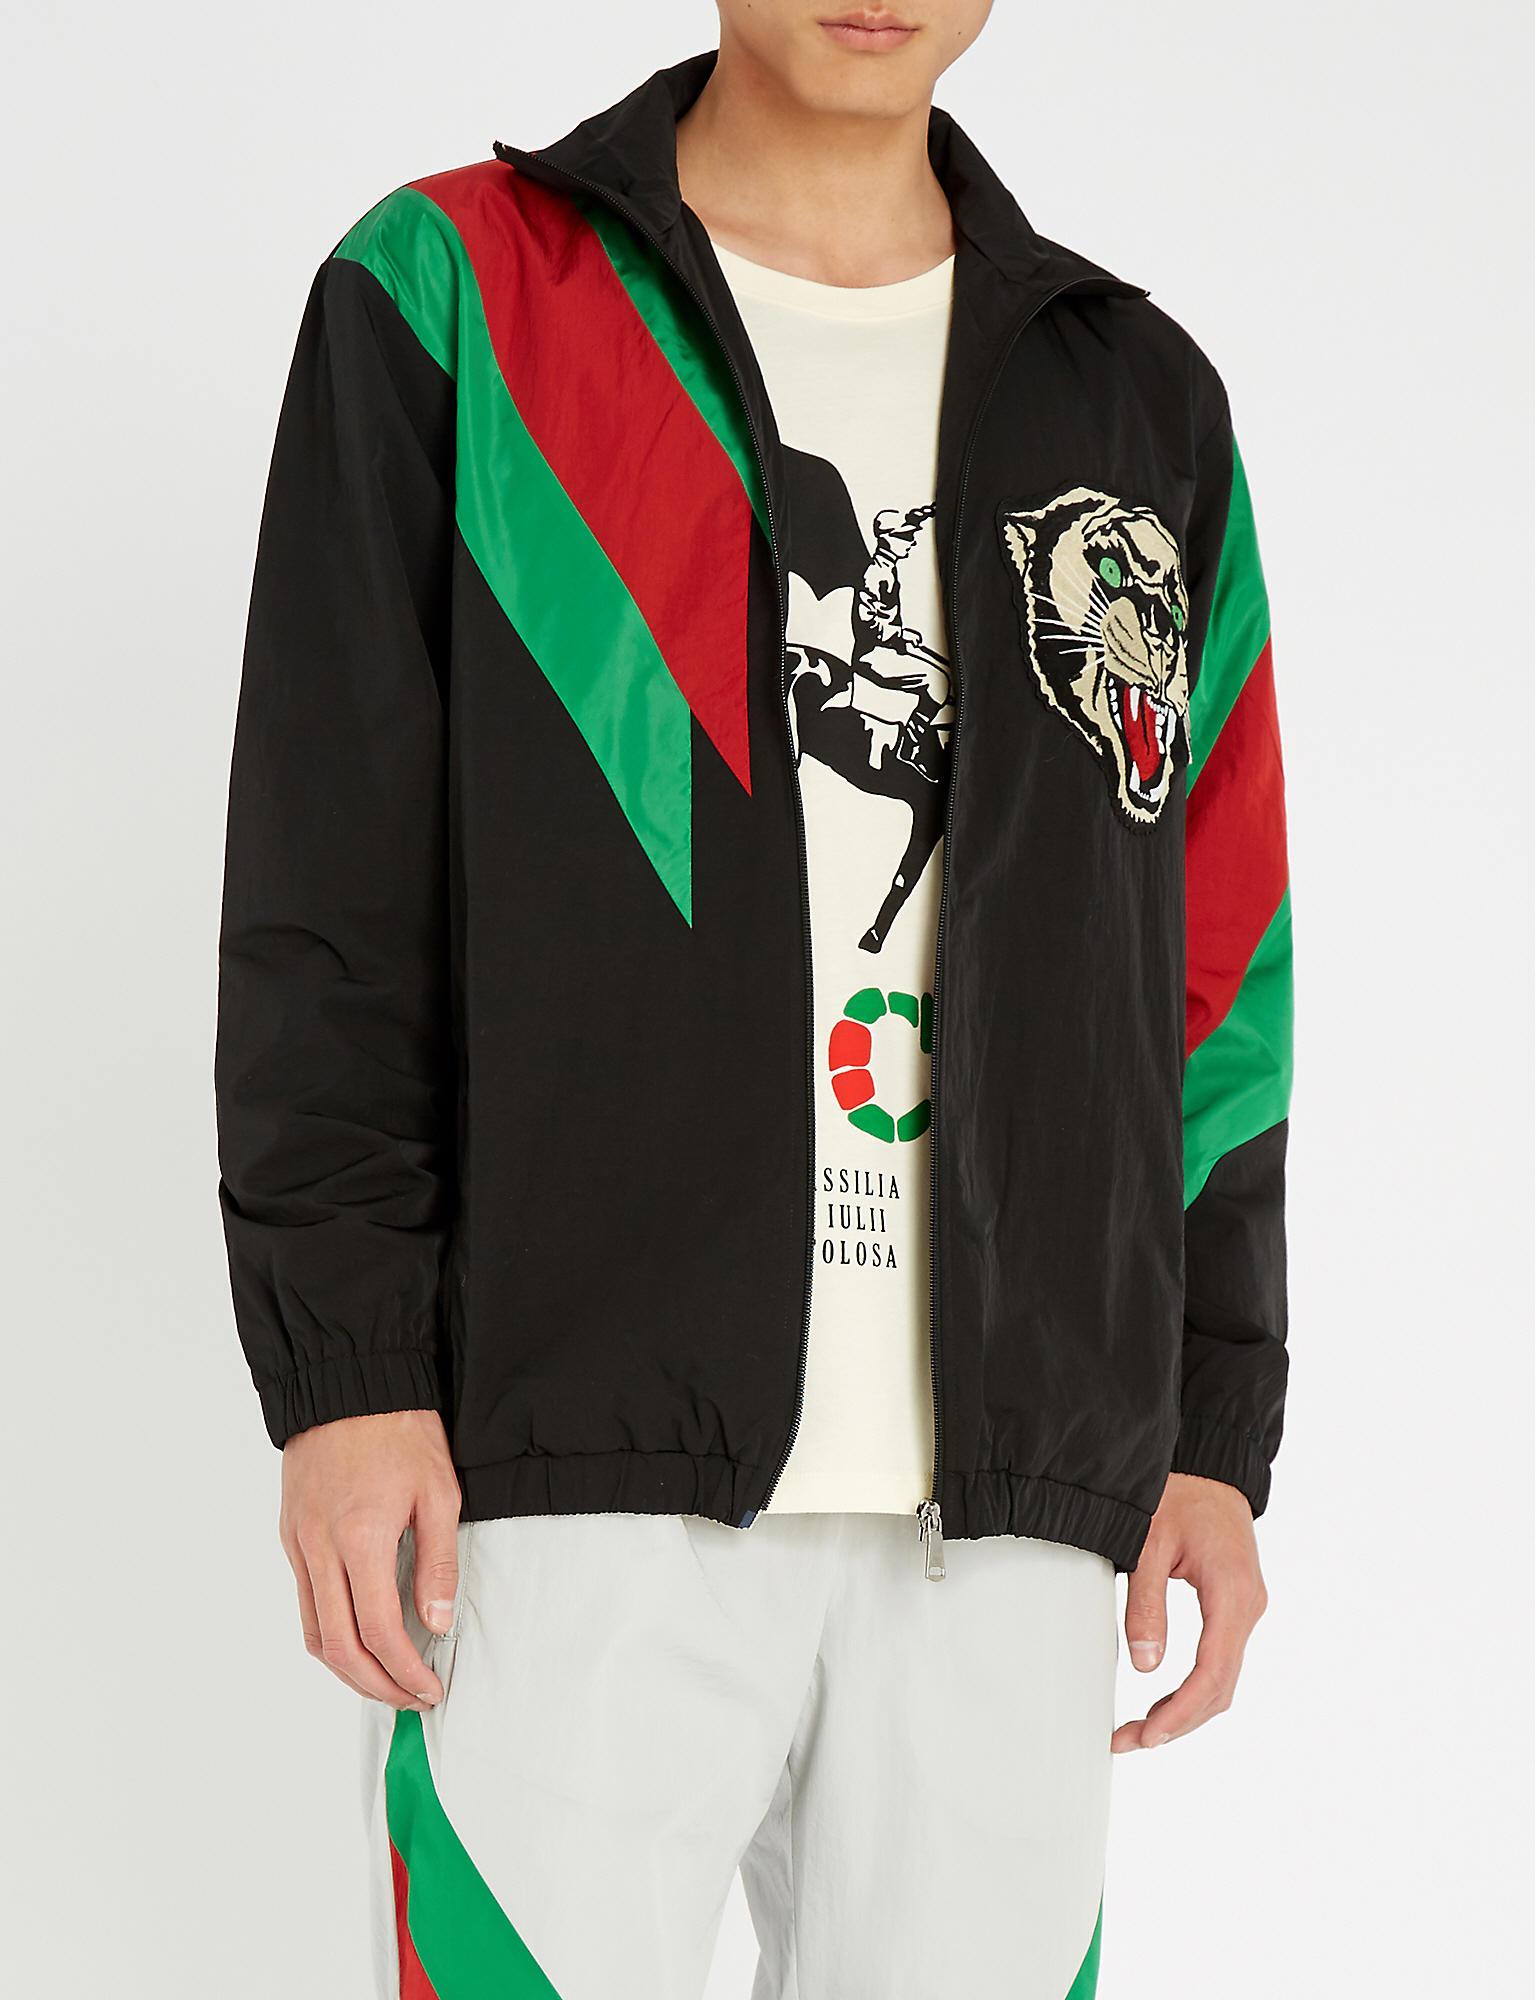 Gucci Tiger Web Jacket in Black/Green (Black) for Men - Lyst